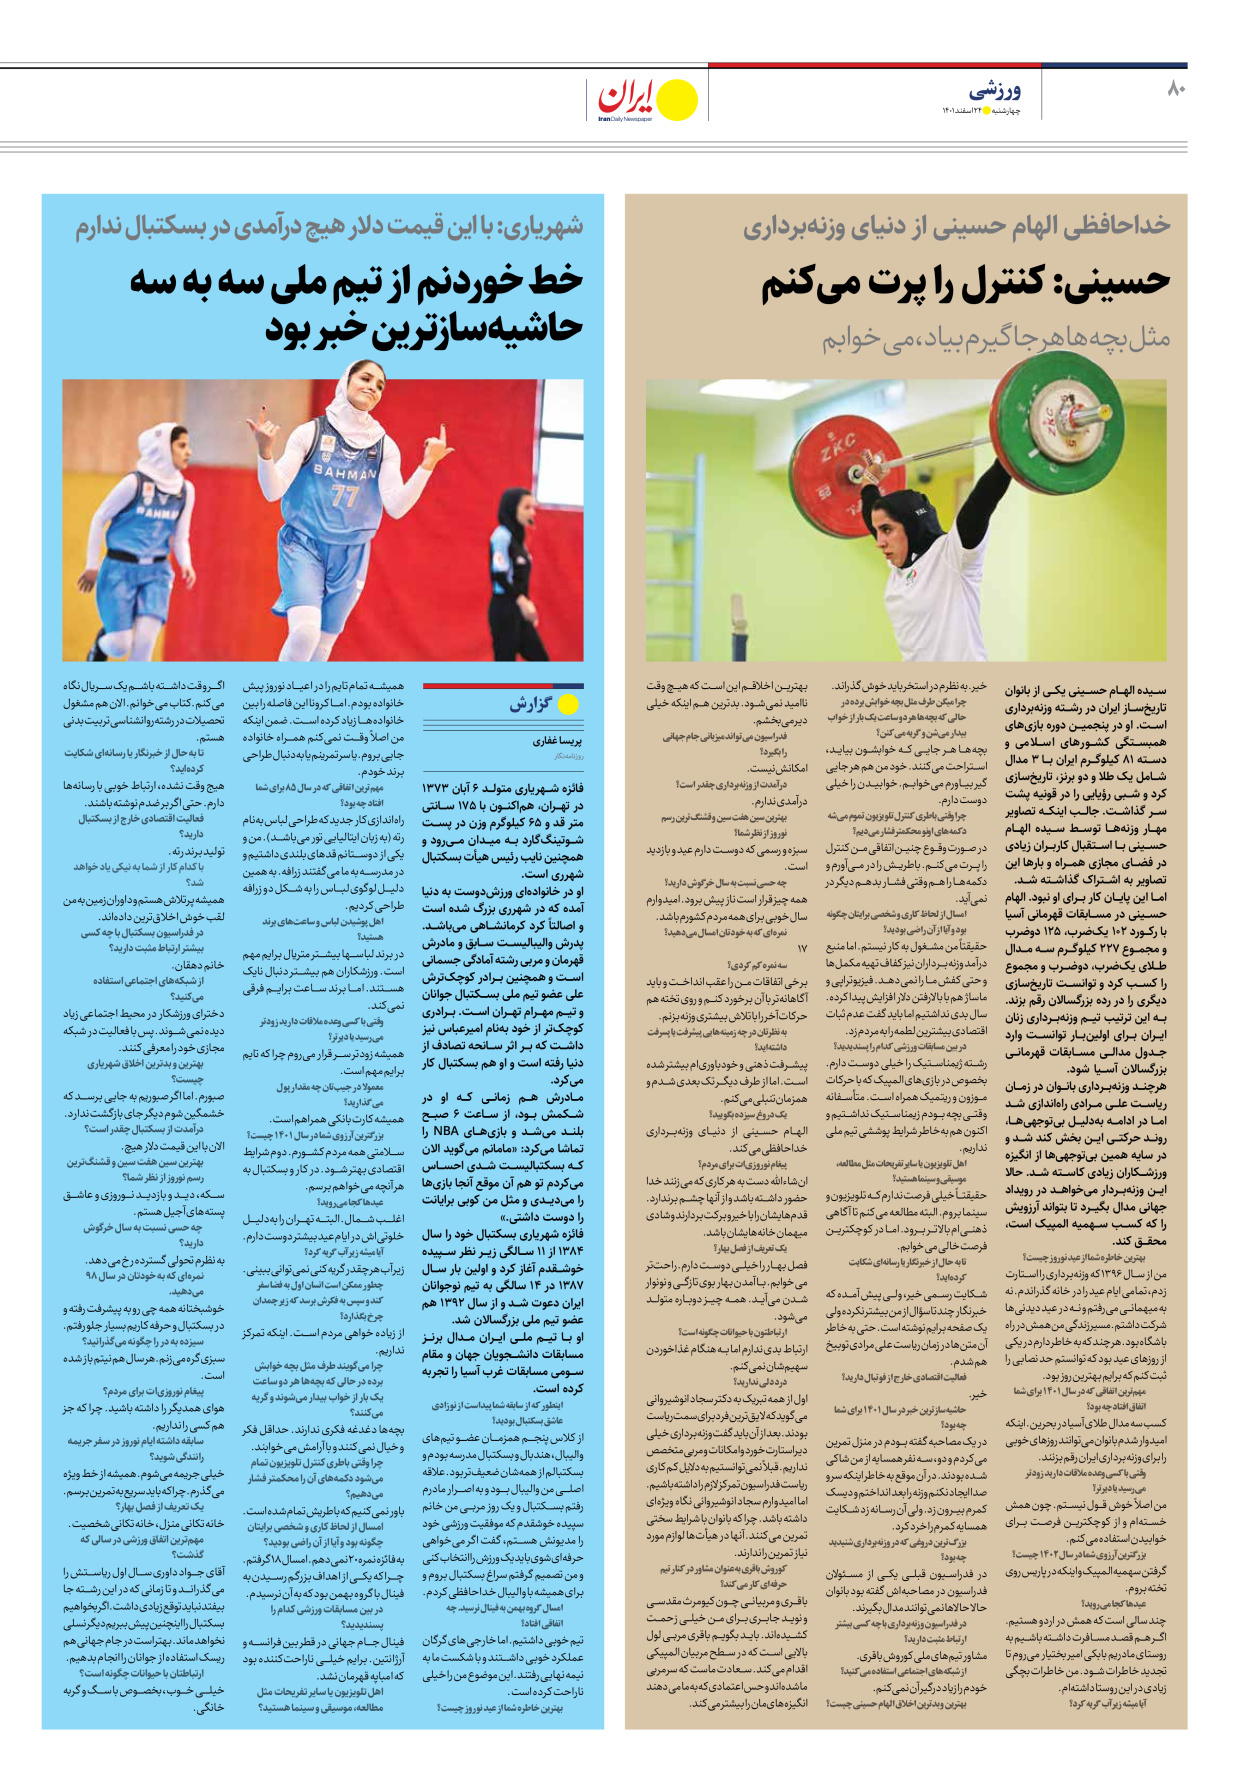 روزنامه ایران - ویژه نامه ویژه نوروز - ۲۴ اسفند ۱۴۰۱ - صفحه ۸۰